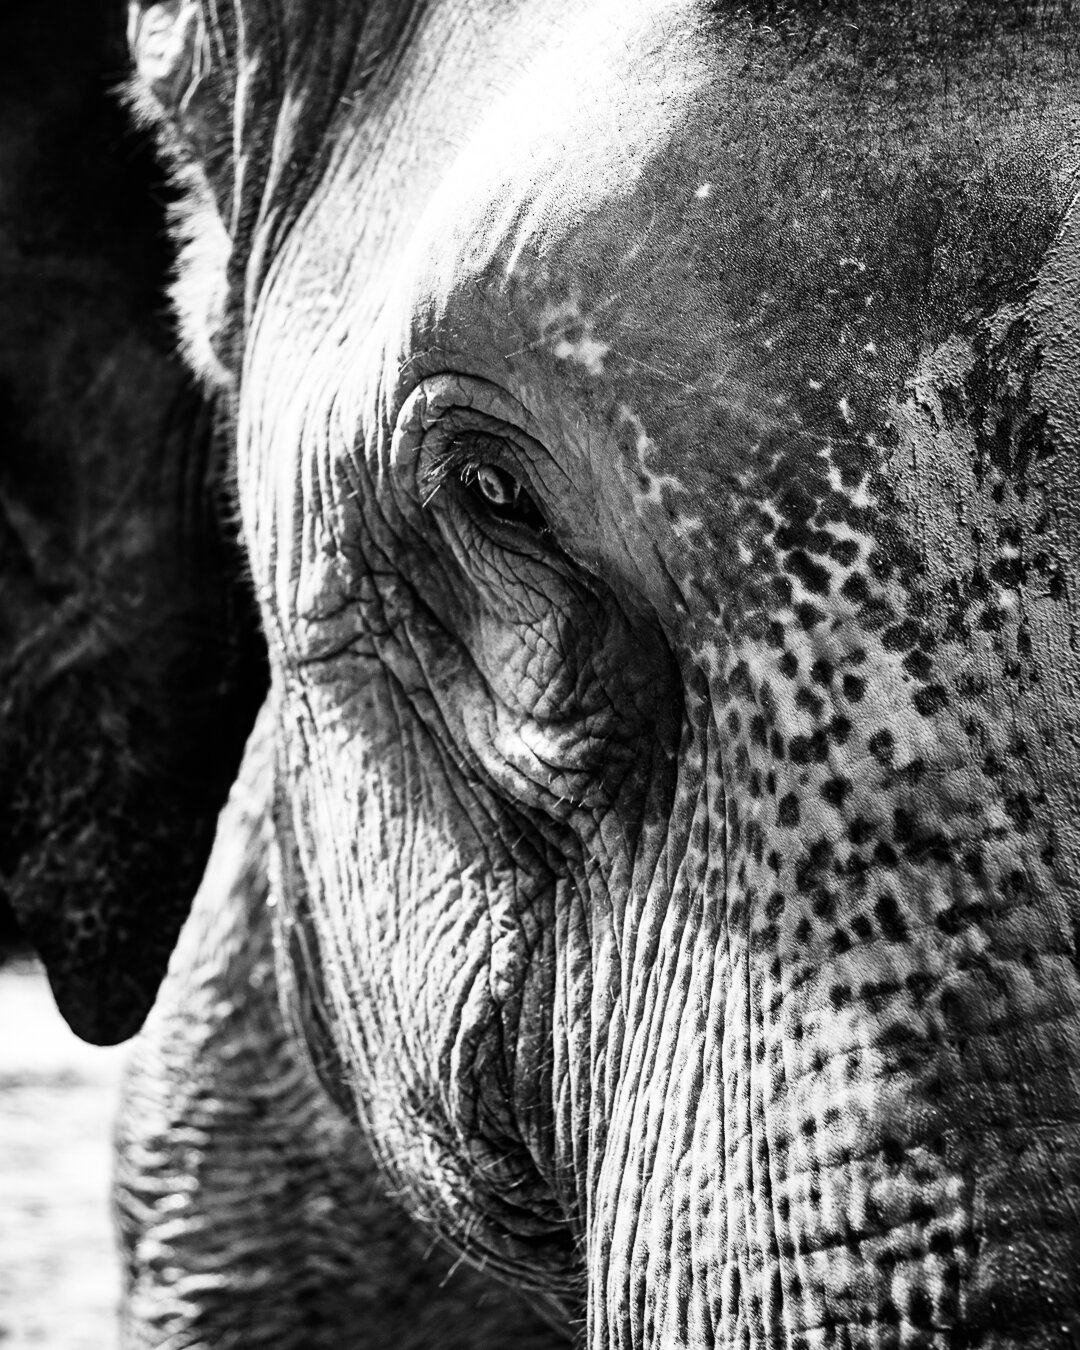 Este elefante asi&aacute;tico nos regala una mirada al alma. Cada arruga, cada textura, cuenta una historia de sabidur&iacute;a y calma. 🐘✨ Deja que te sumerja en su mundo contemplativo. Pronto, en #MemoriasReveladas, exploraremos m&aacute;s de la m